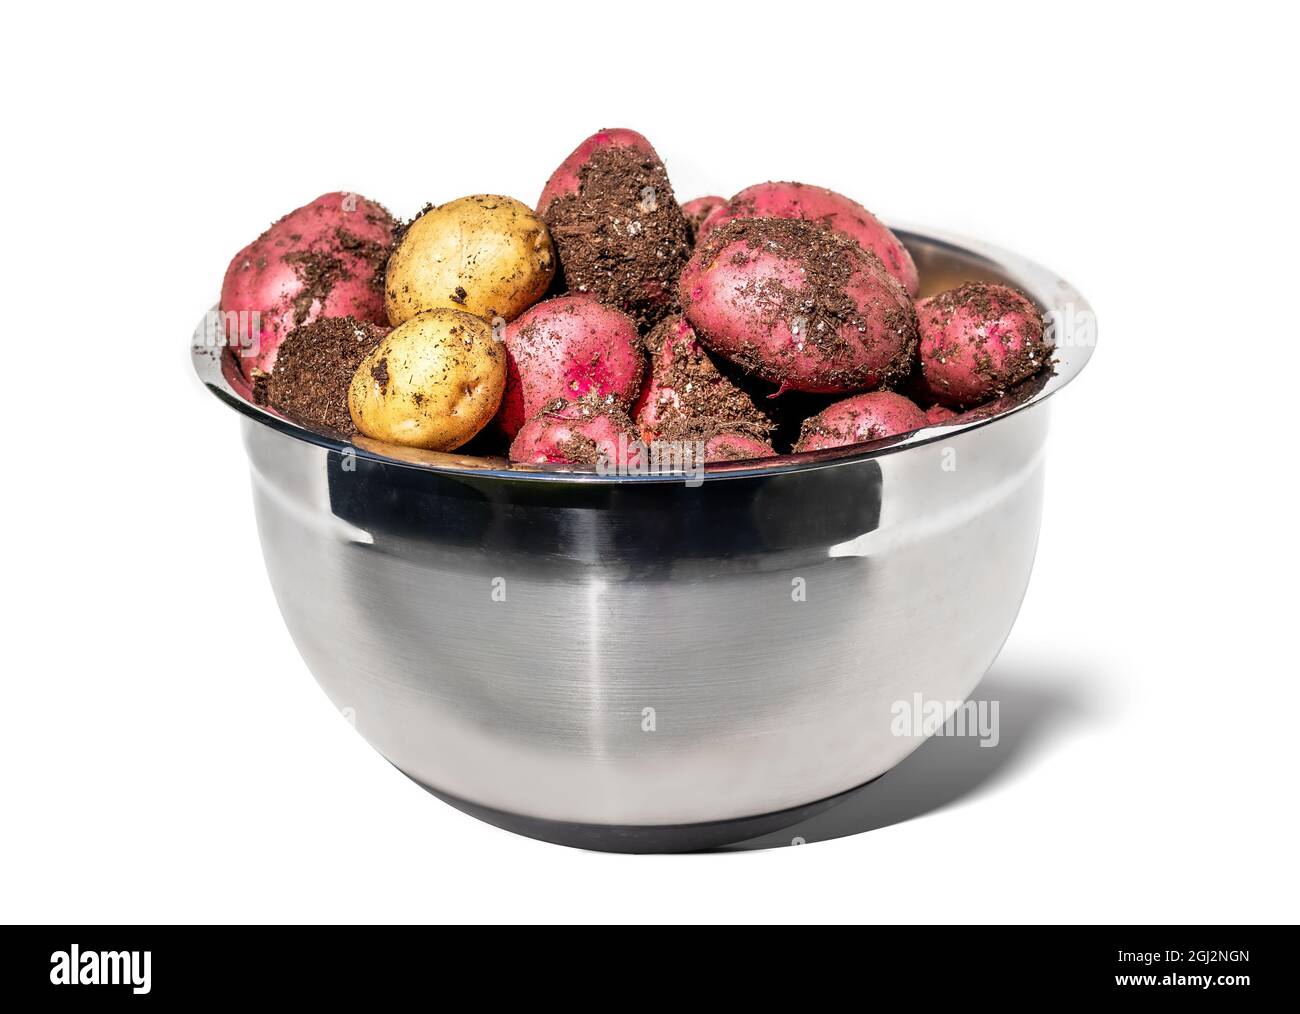 Frisch gegraben neue Kartoffeln in große Schüssel, gerade geerntet. Edelstahlbehälter mit rohen mittelgroßen roten und gelben Kartoffeln, die noch mit Soi bedeckt sind Stockfoto